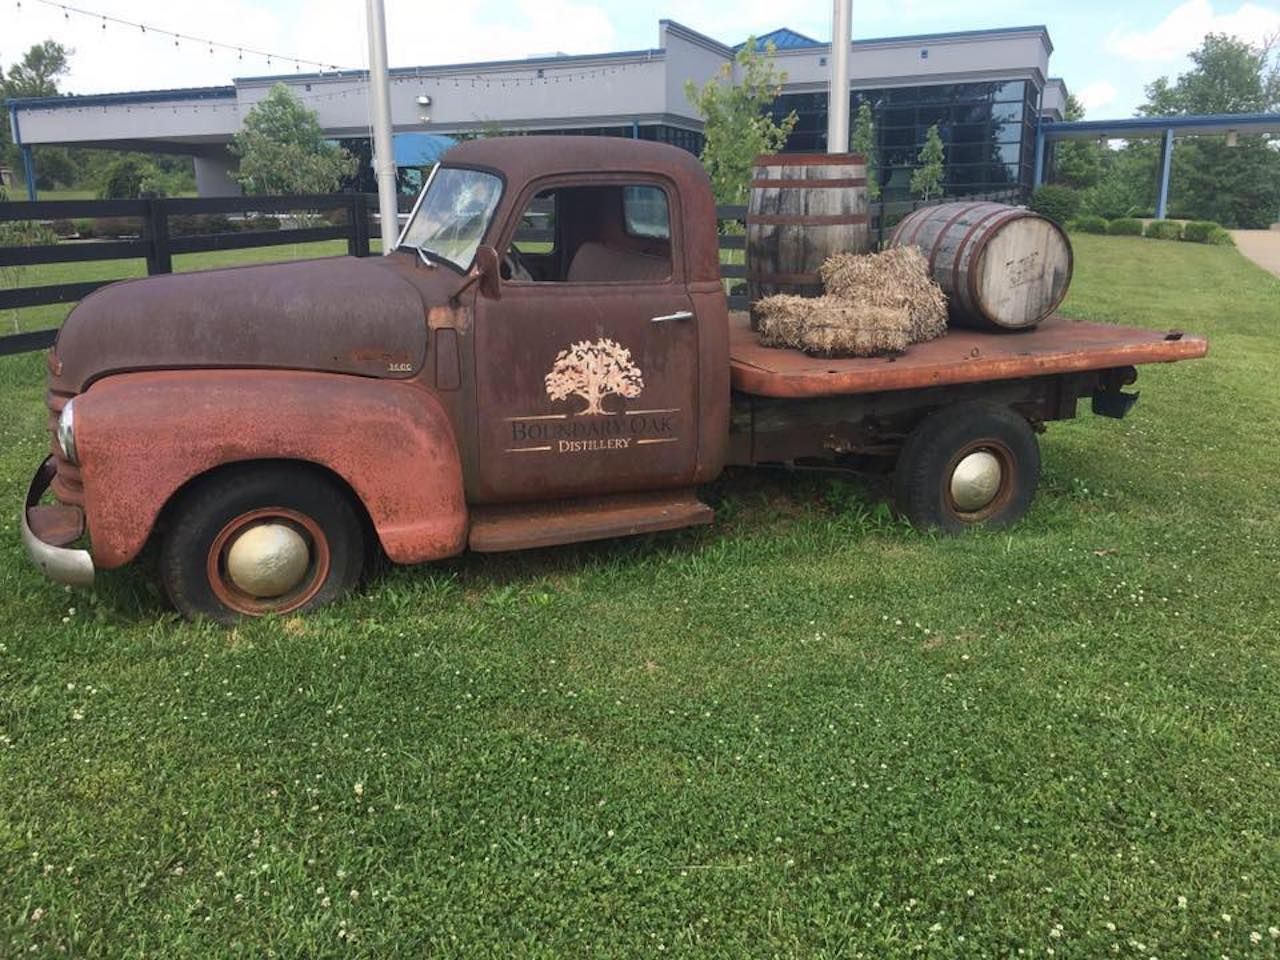 Old truck with bourbon barrels outside Kentucky's Boundary Oak Distillery, LLC